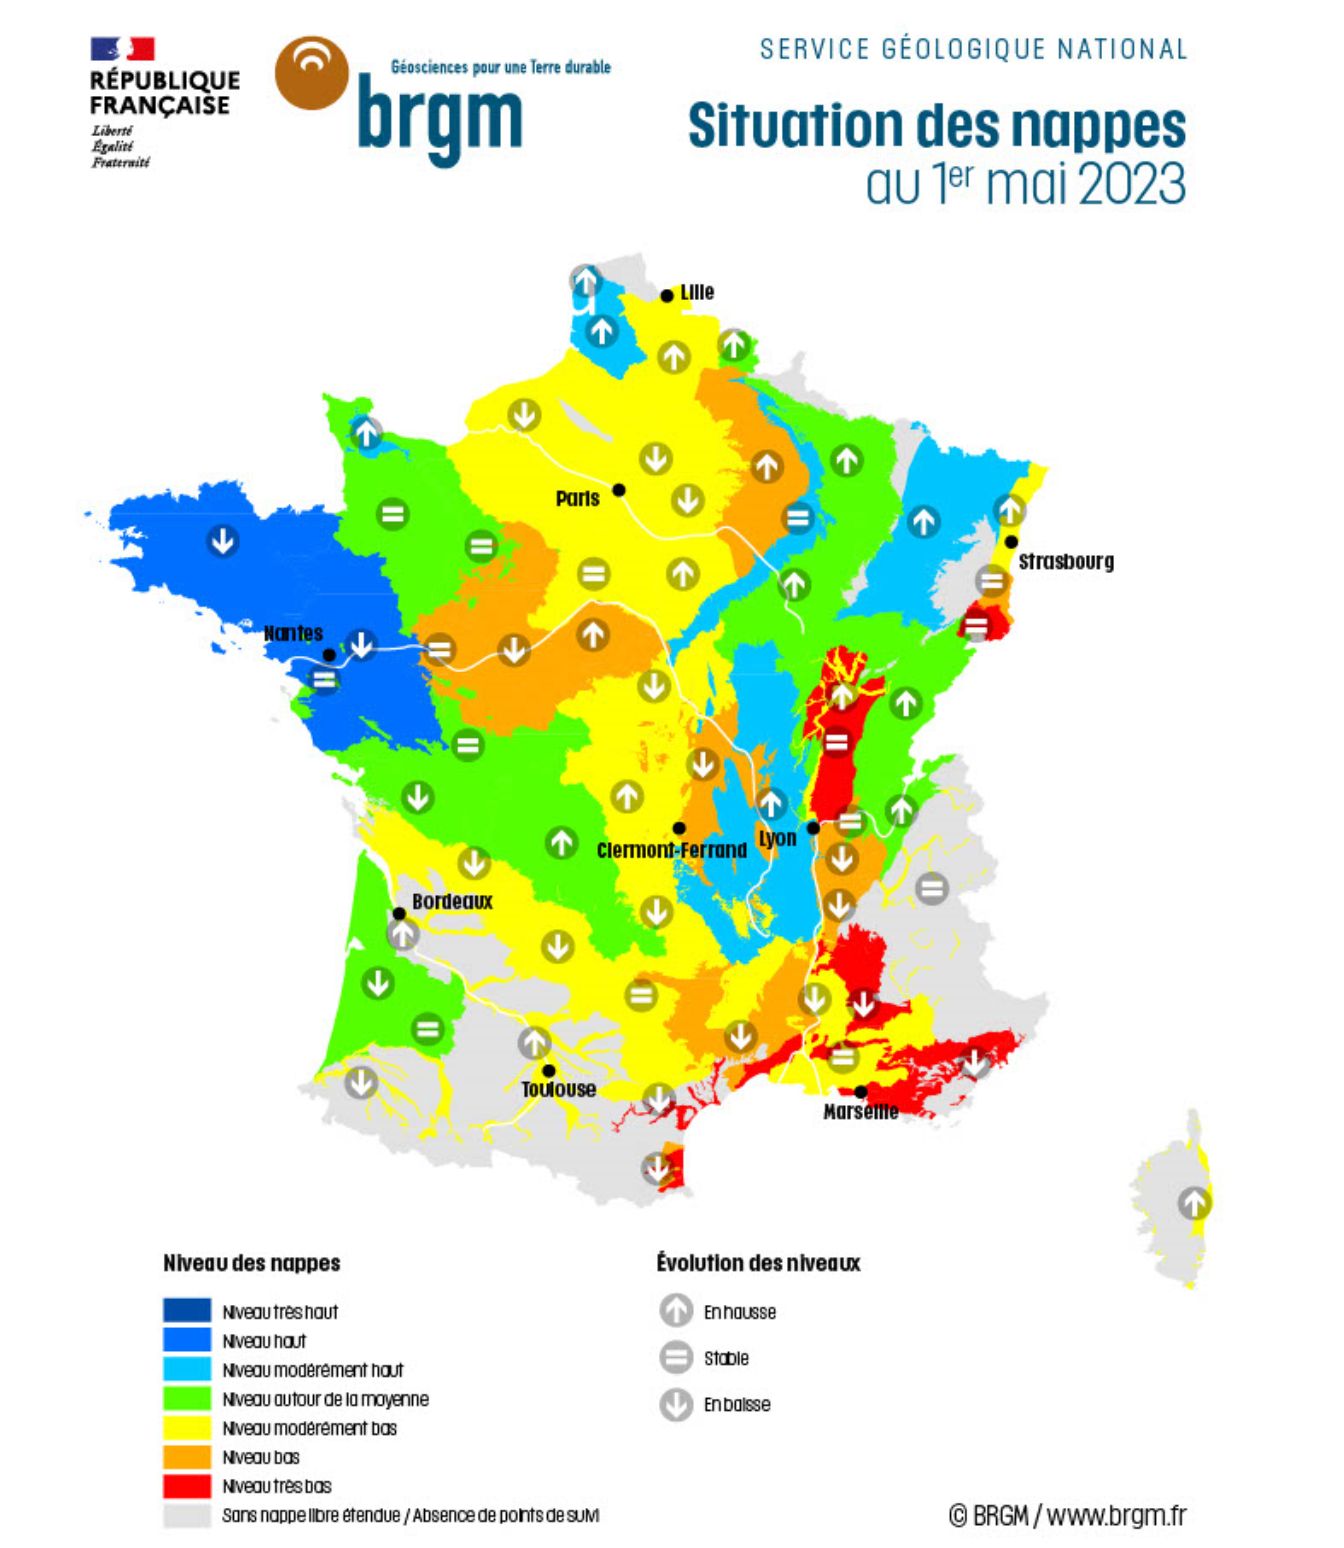 Reims La Marne Agricole Le bureau de recherche géologique et minière (BRGM) a publié le 17 mai, son bulletin de situation hydrogéologique. D’une manière globale, les pluies d’avril n’ont pas permis de recharger toutes les nappes.